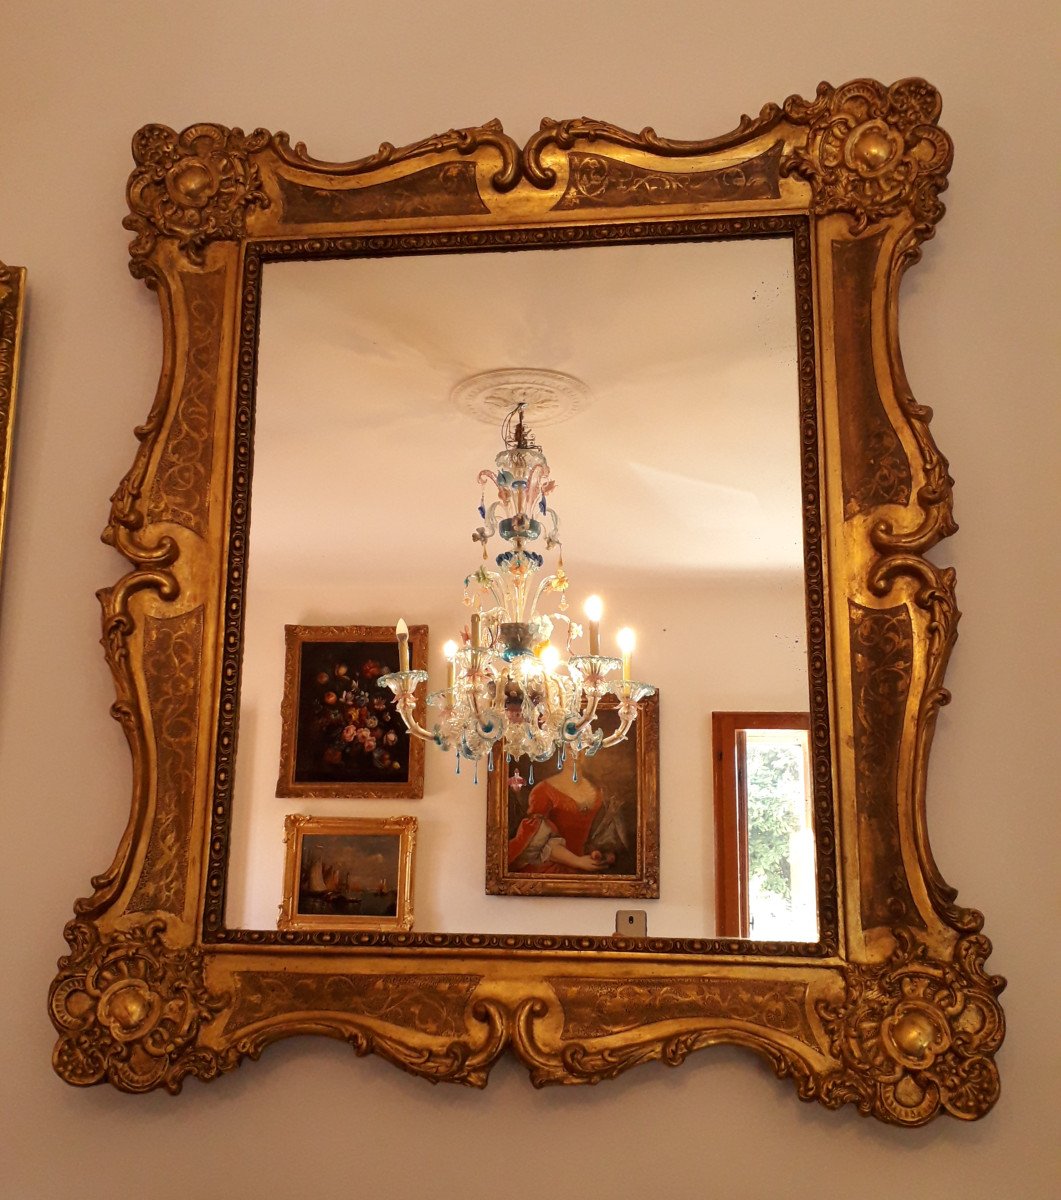 Miroir dans Cadre Bois Doré - Venise XVIII s.